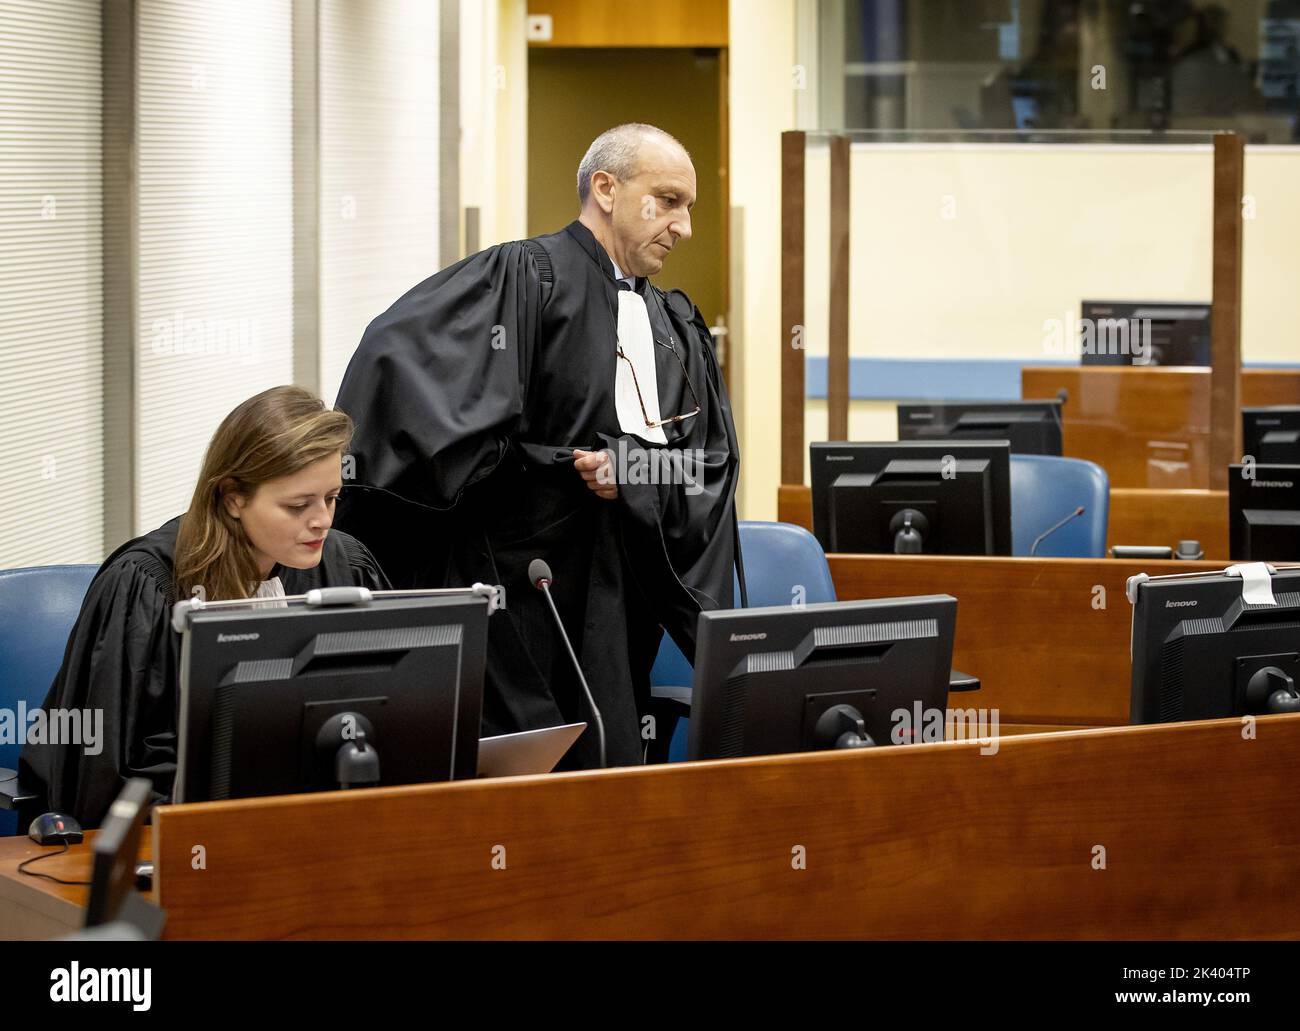 2022-09-29 09:54:11 DEN HAAG - Rechtsanwalt Emmanuel Altit (R) von Felicien Kabuga vor dem Prozess am Internationalen Restmechanismus für Strafgerichtshöfe (IRMCT) in Den Haag. Der Ruandan wird verdächtigt, eine der Schlüsselfiguren des Versuchs von 1994 gewesen zu sein, die Tutsi-Minderheit in seinem Land zu vernichten. ANP POOL KOEN VAN WEEL niederlande Out - belgien Out Stockfoto